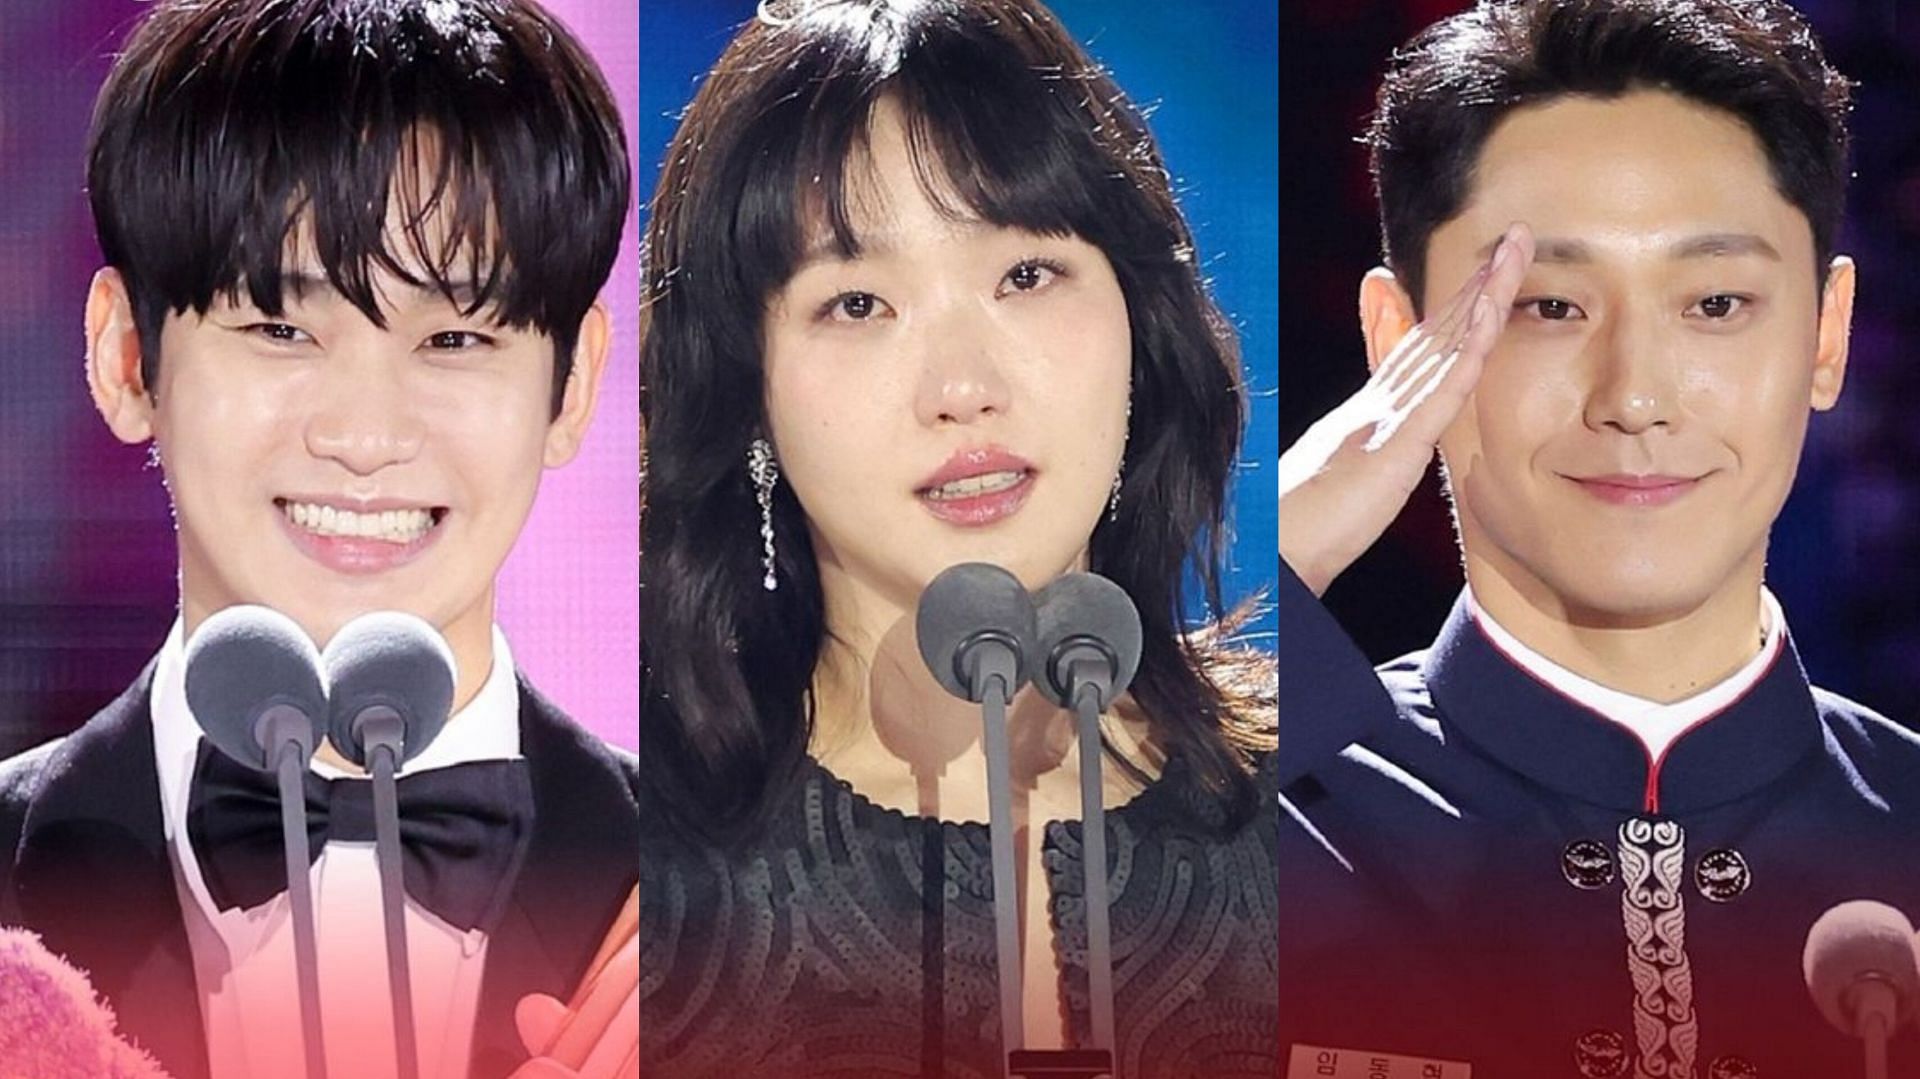 Moving, Lee Do-hyun, Kim Soo-hyun &amp; Namgoong Min win big at the 60th Baeksang Arts awards: Complete list of winners (Image via baeksang.official/Instagram)